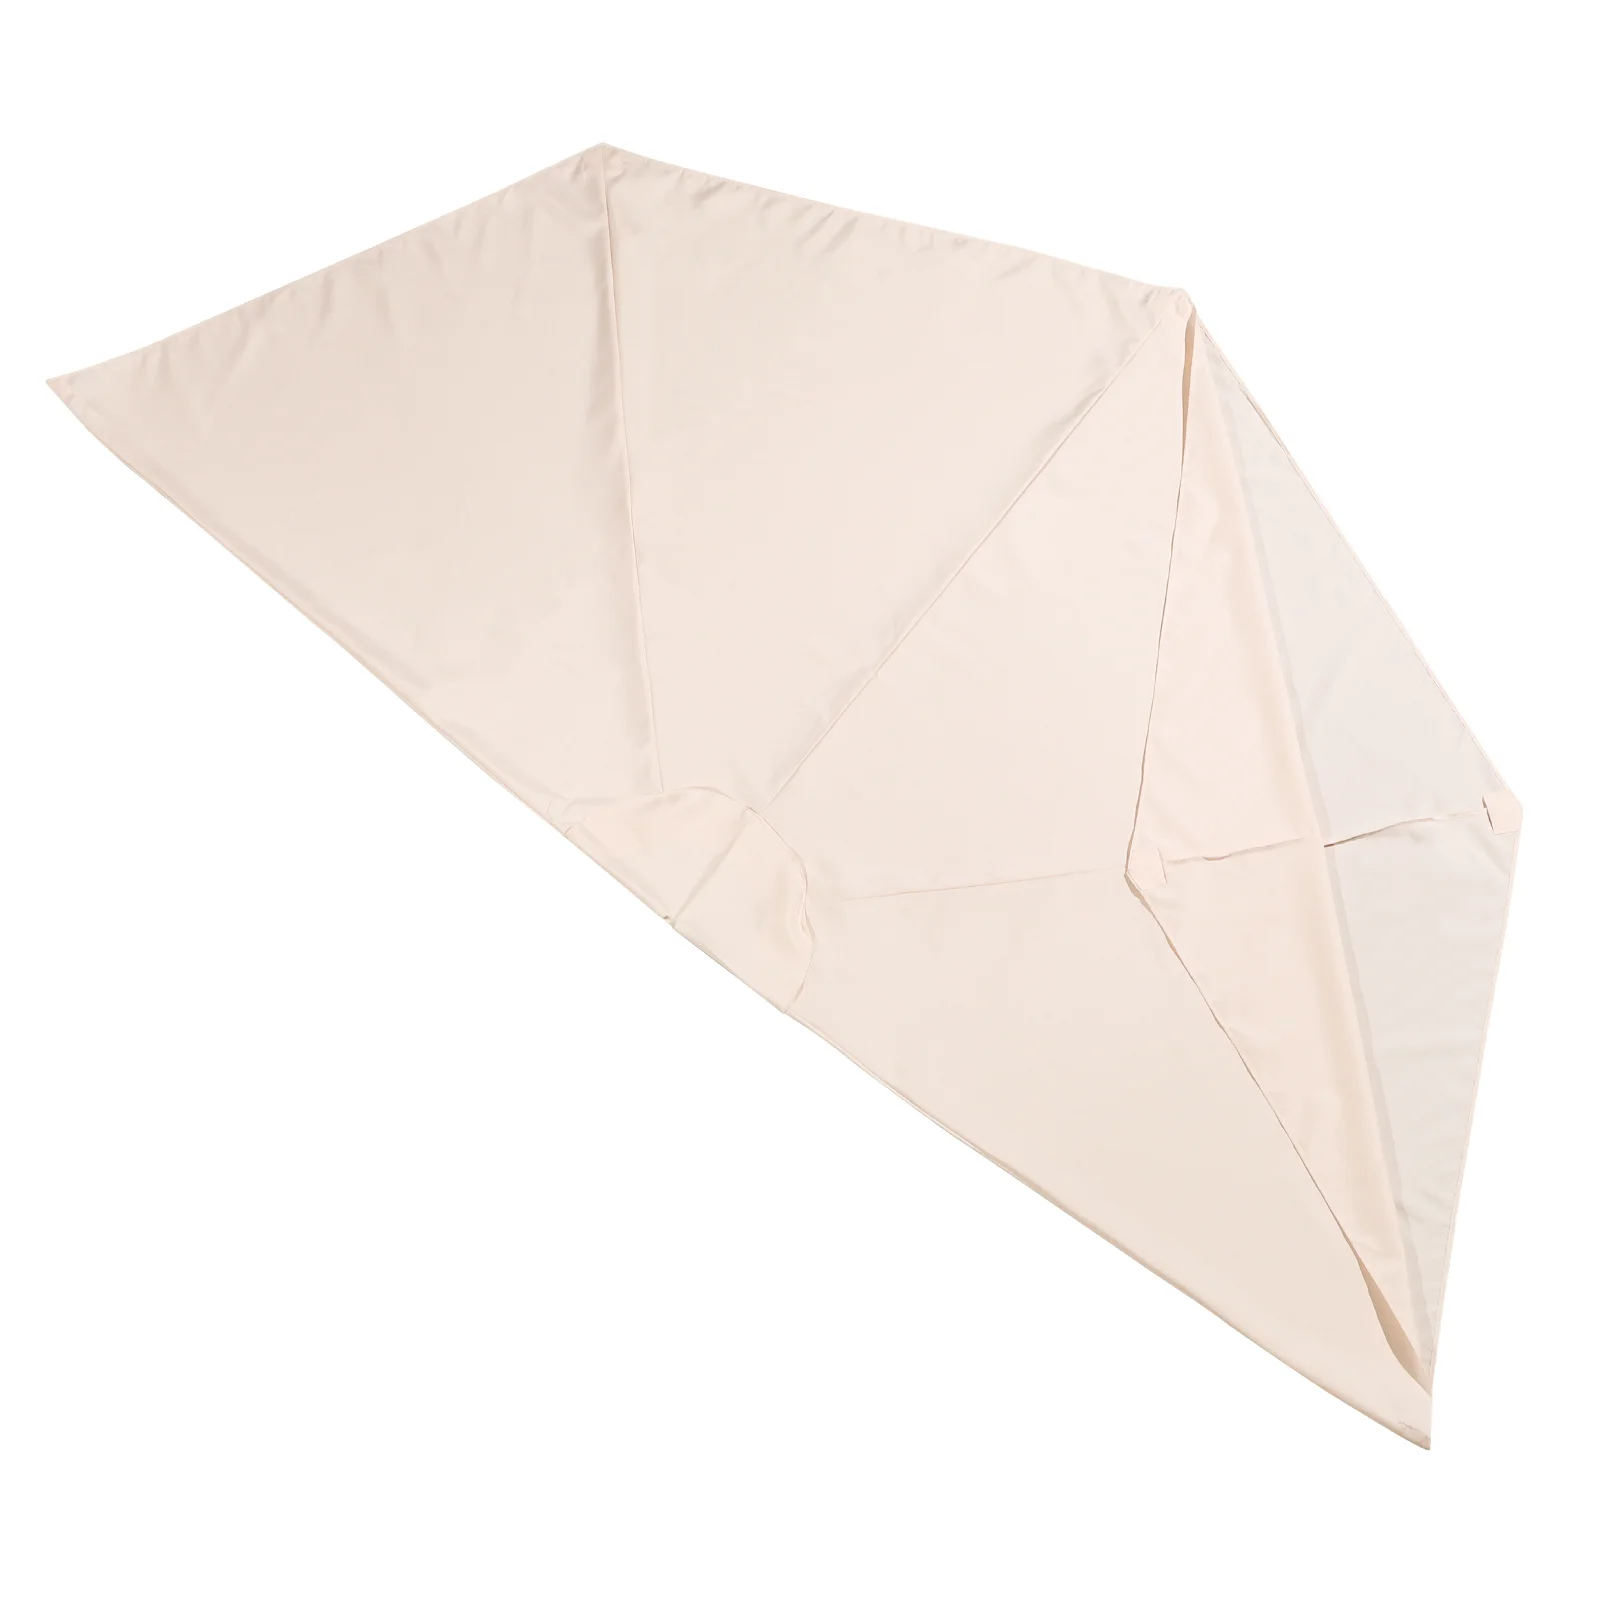 

Зонт УФ-стойкий, зонтик для внутреннего дворика, сменный солнцезащитный козырек